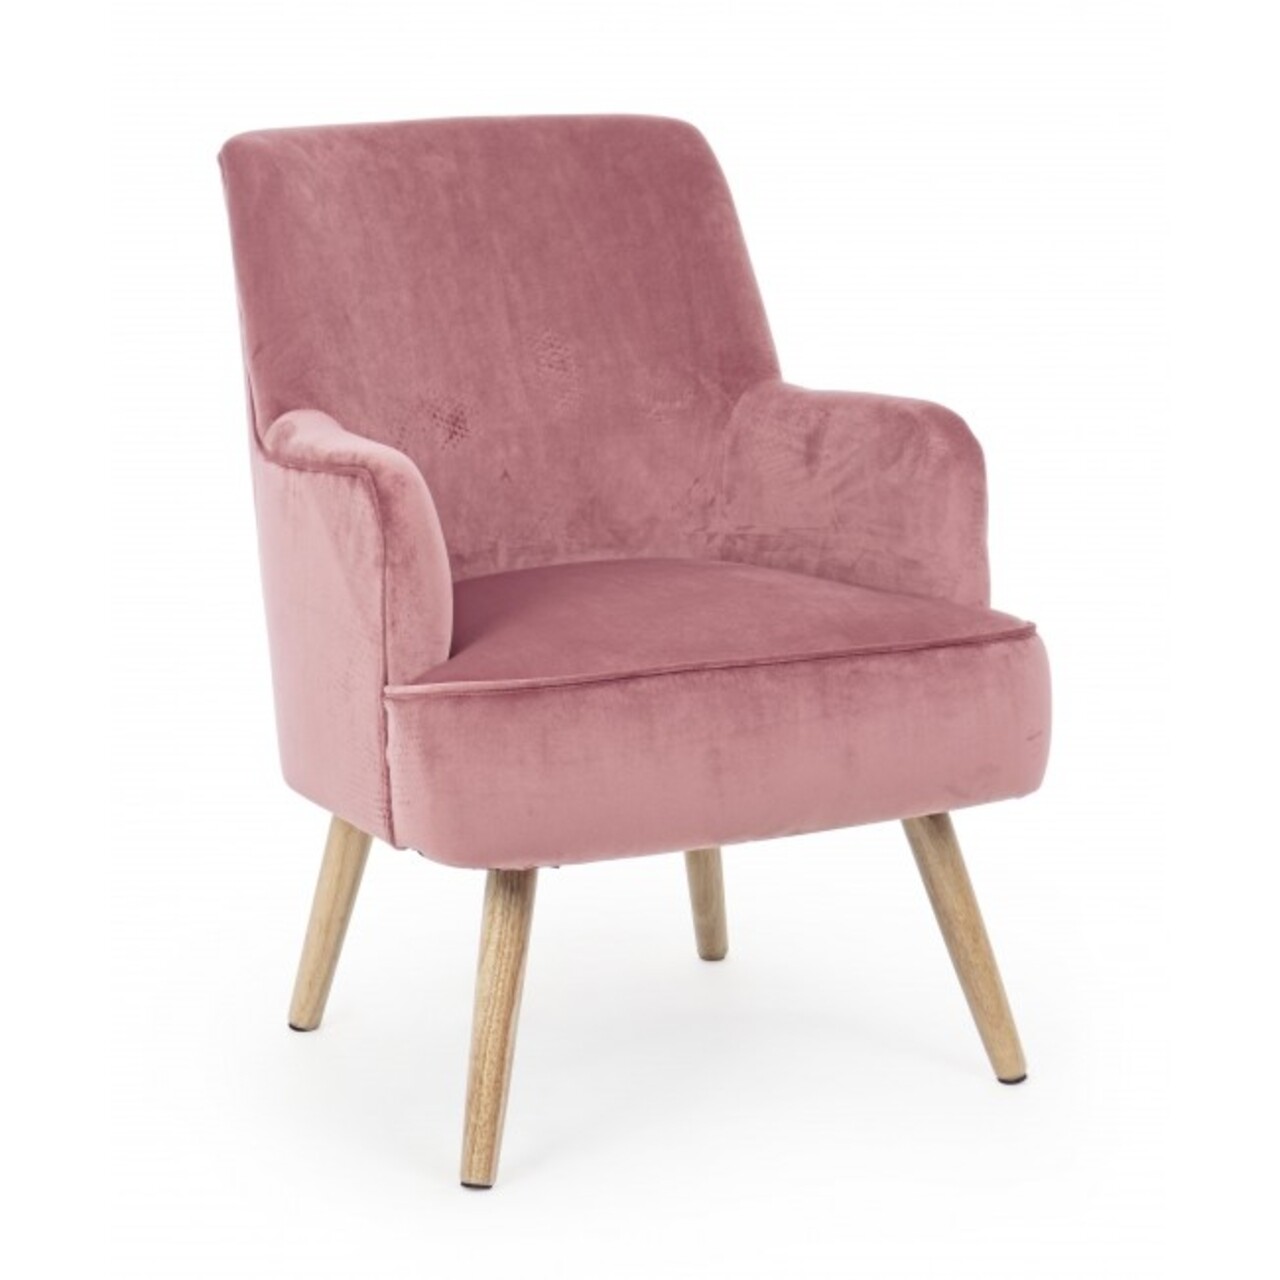 Adeline fotel, bizzotto, 60x67x79 cm, erdeifenyő/bársony, antik rózsaszín